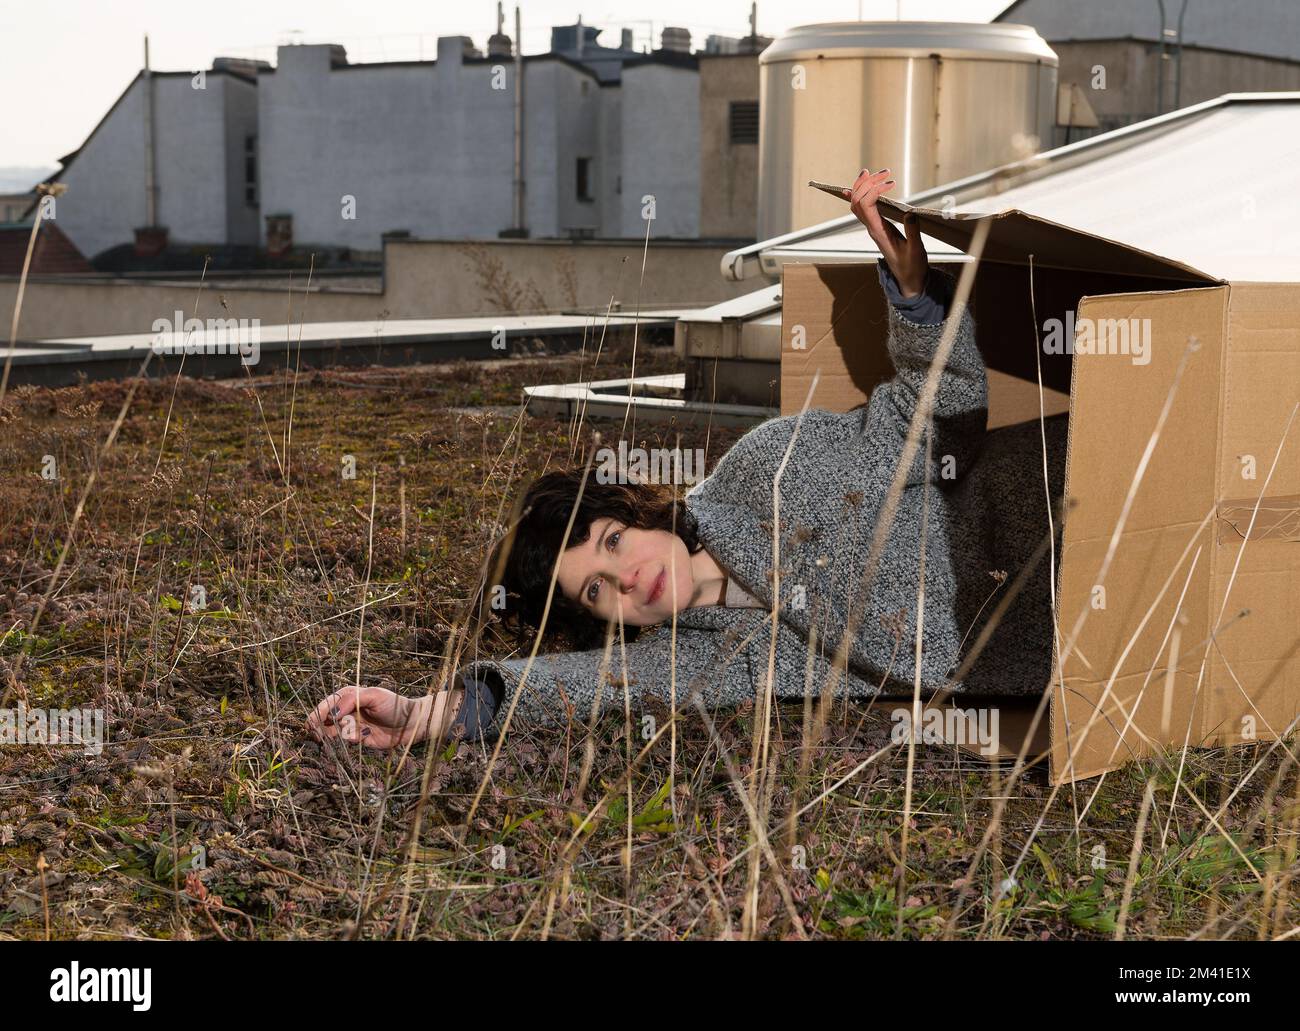 Austrian Filmmaker Marie Kreutzer lies in a box on a rooftop in Vienna. Stock Photo